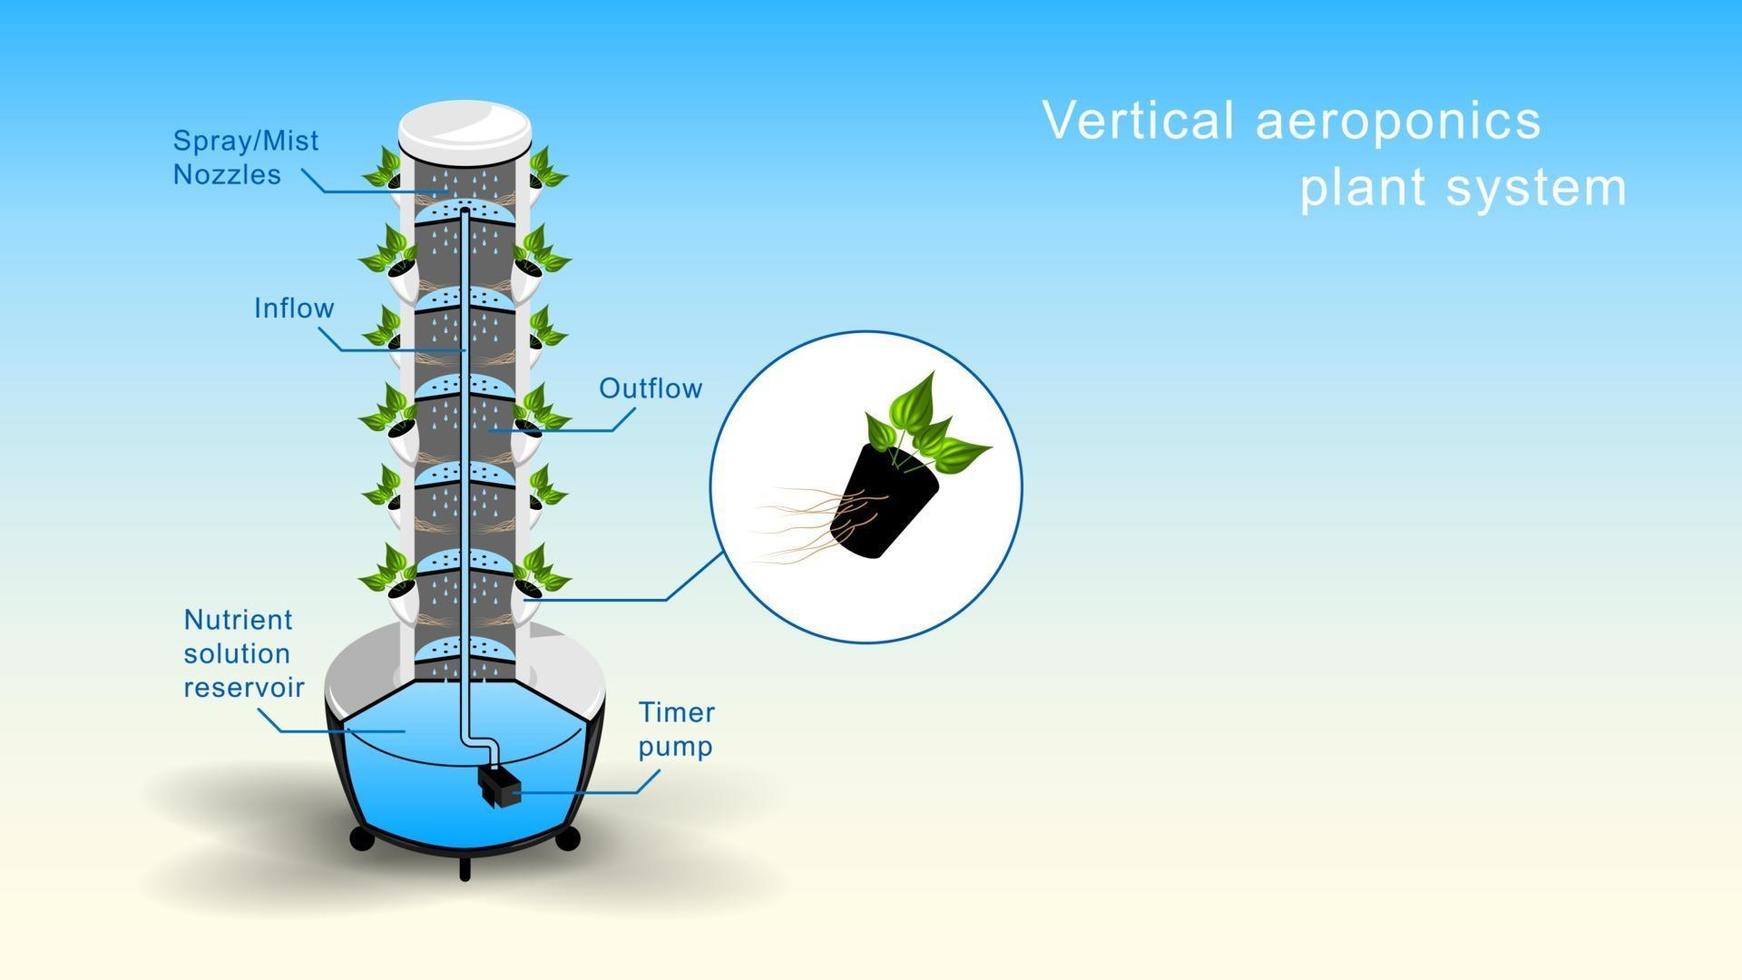 couper le système végétal vertical d'aéroponie réaliste vecteur